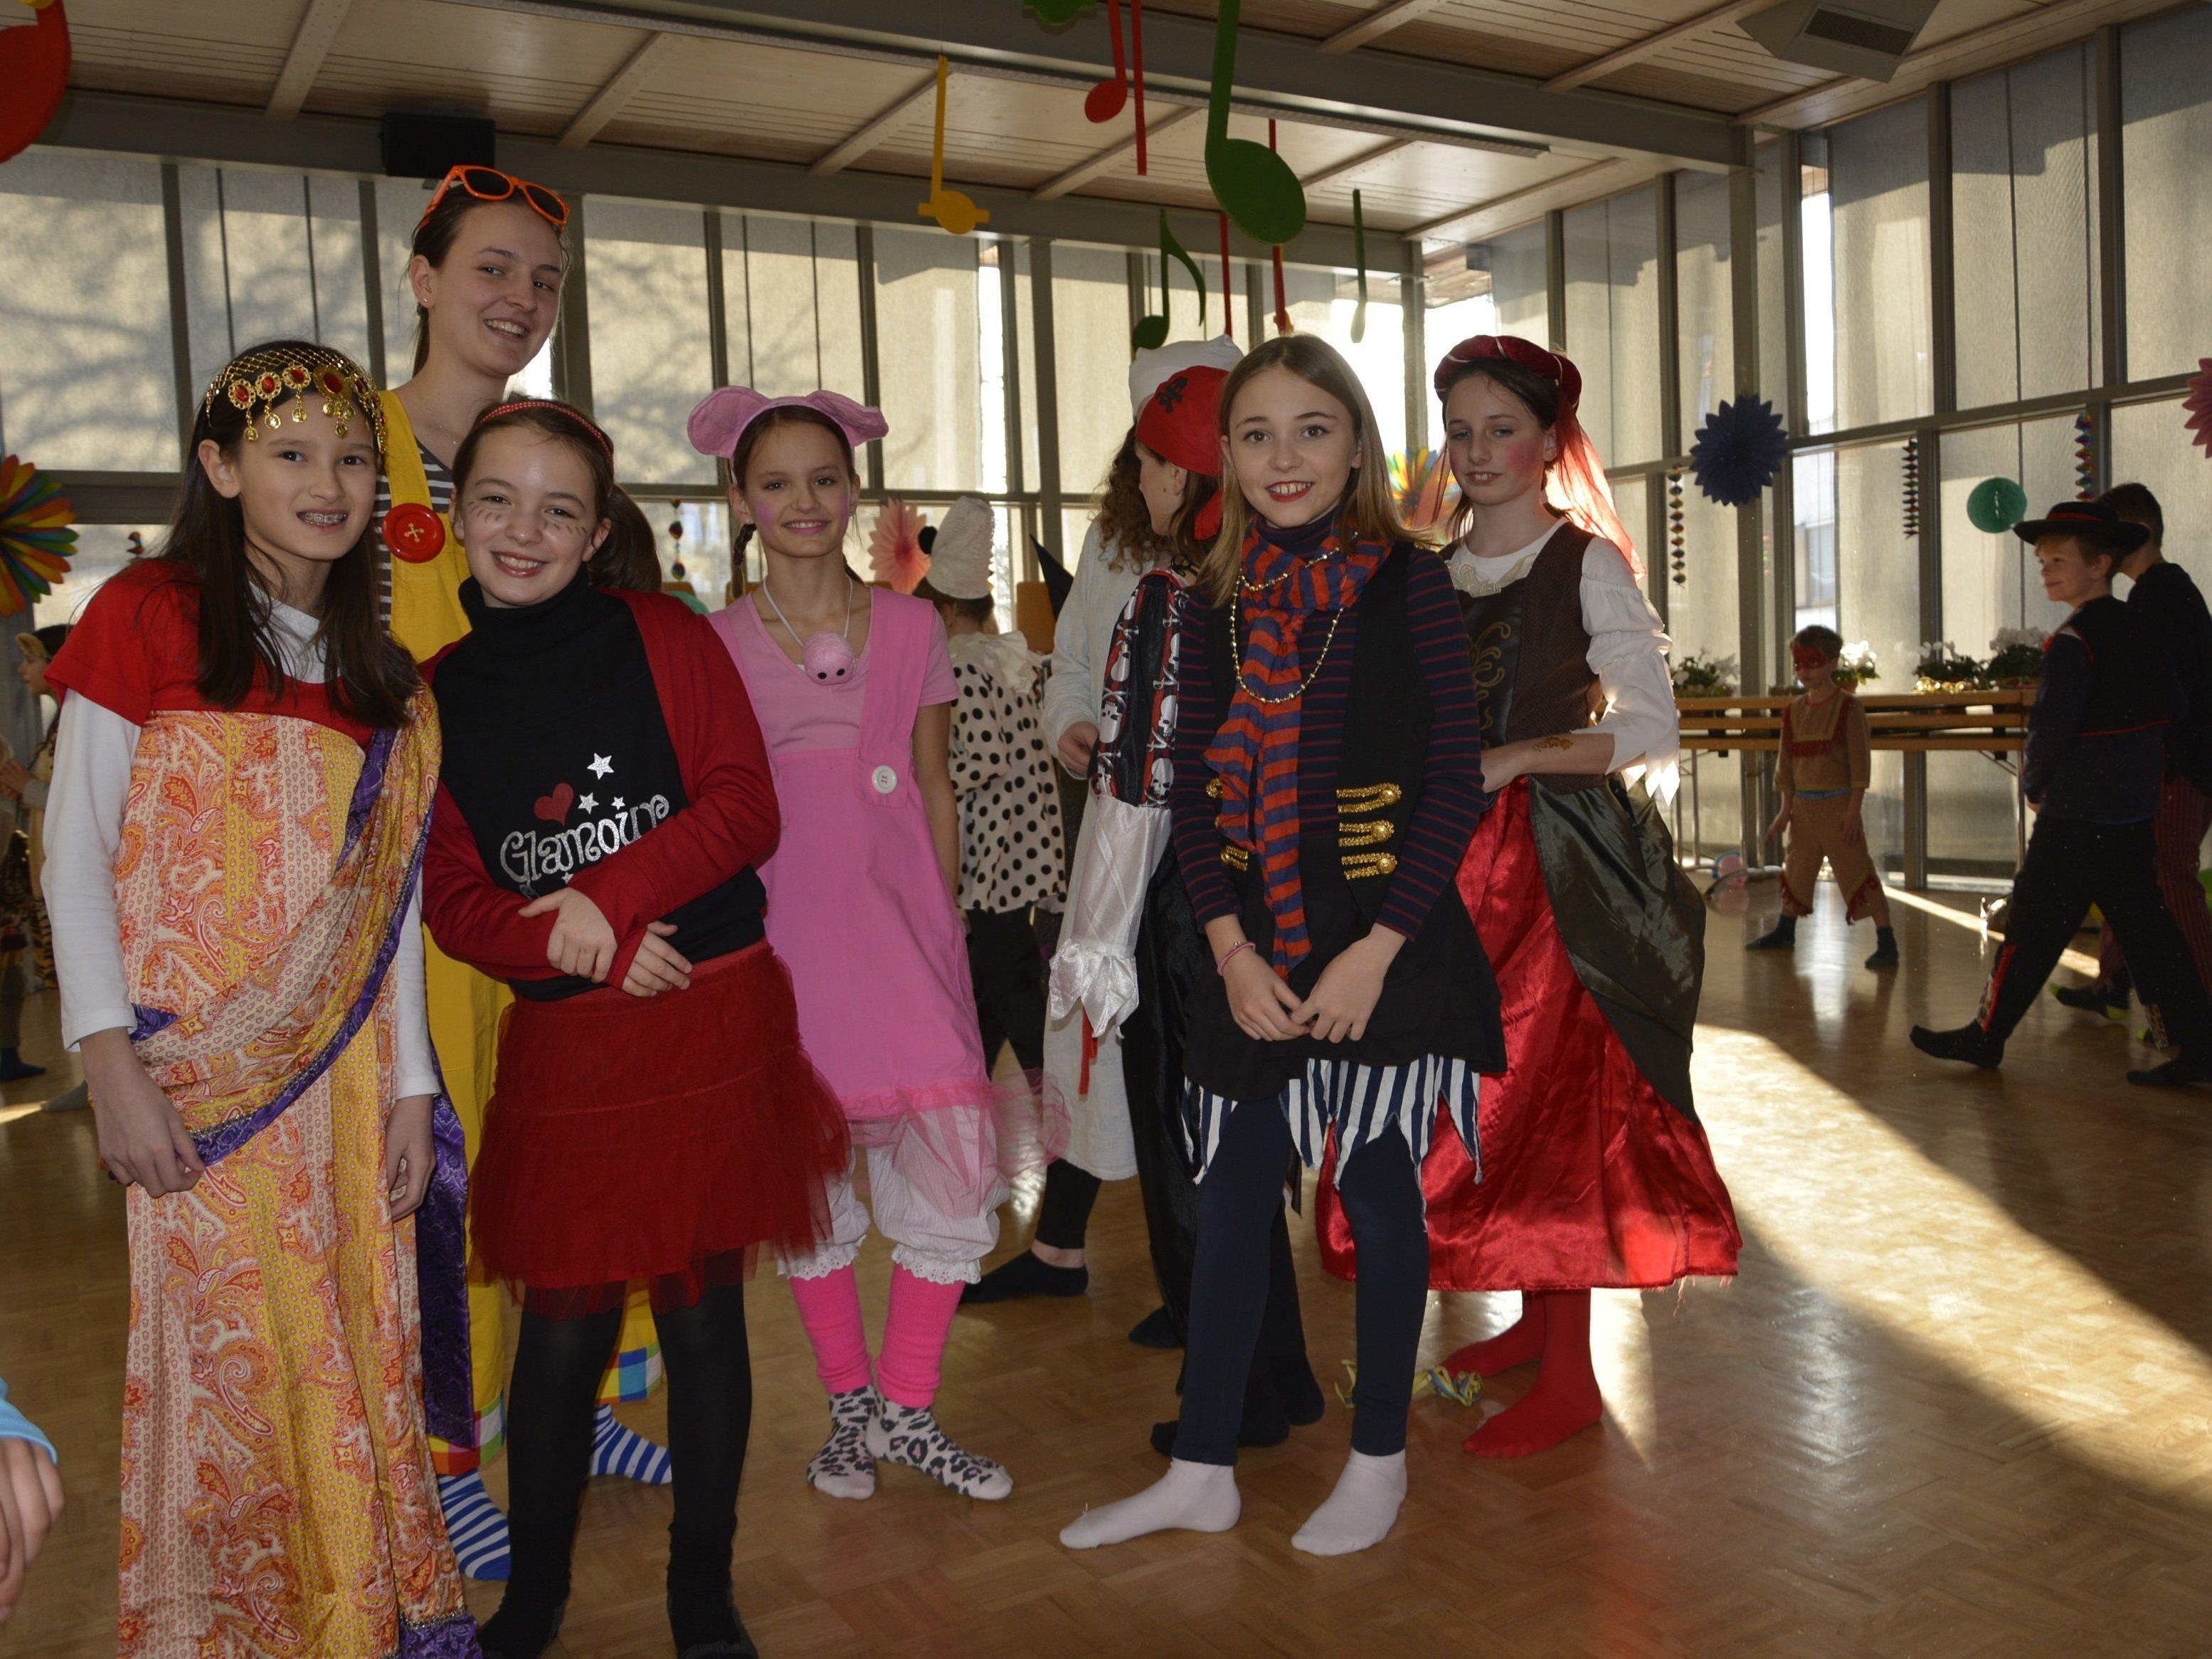 In originelle Kostüme schlüpften die Kinder für ihren Faschingsball im Pfarrheim Hatlerdorf.